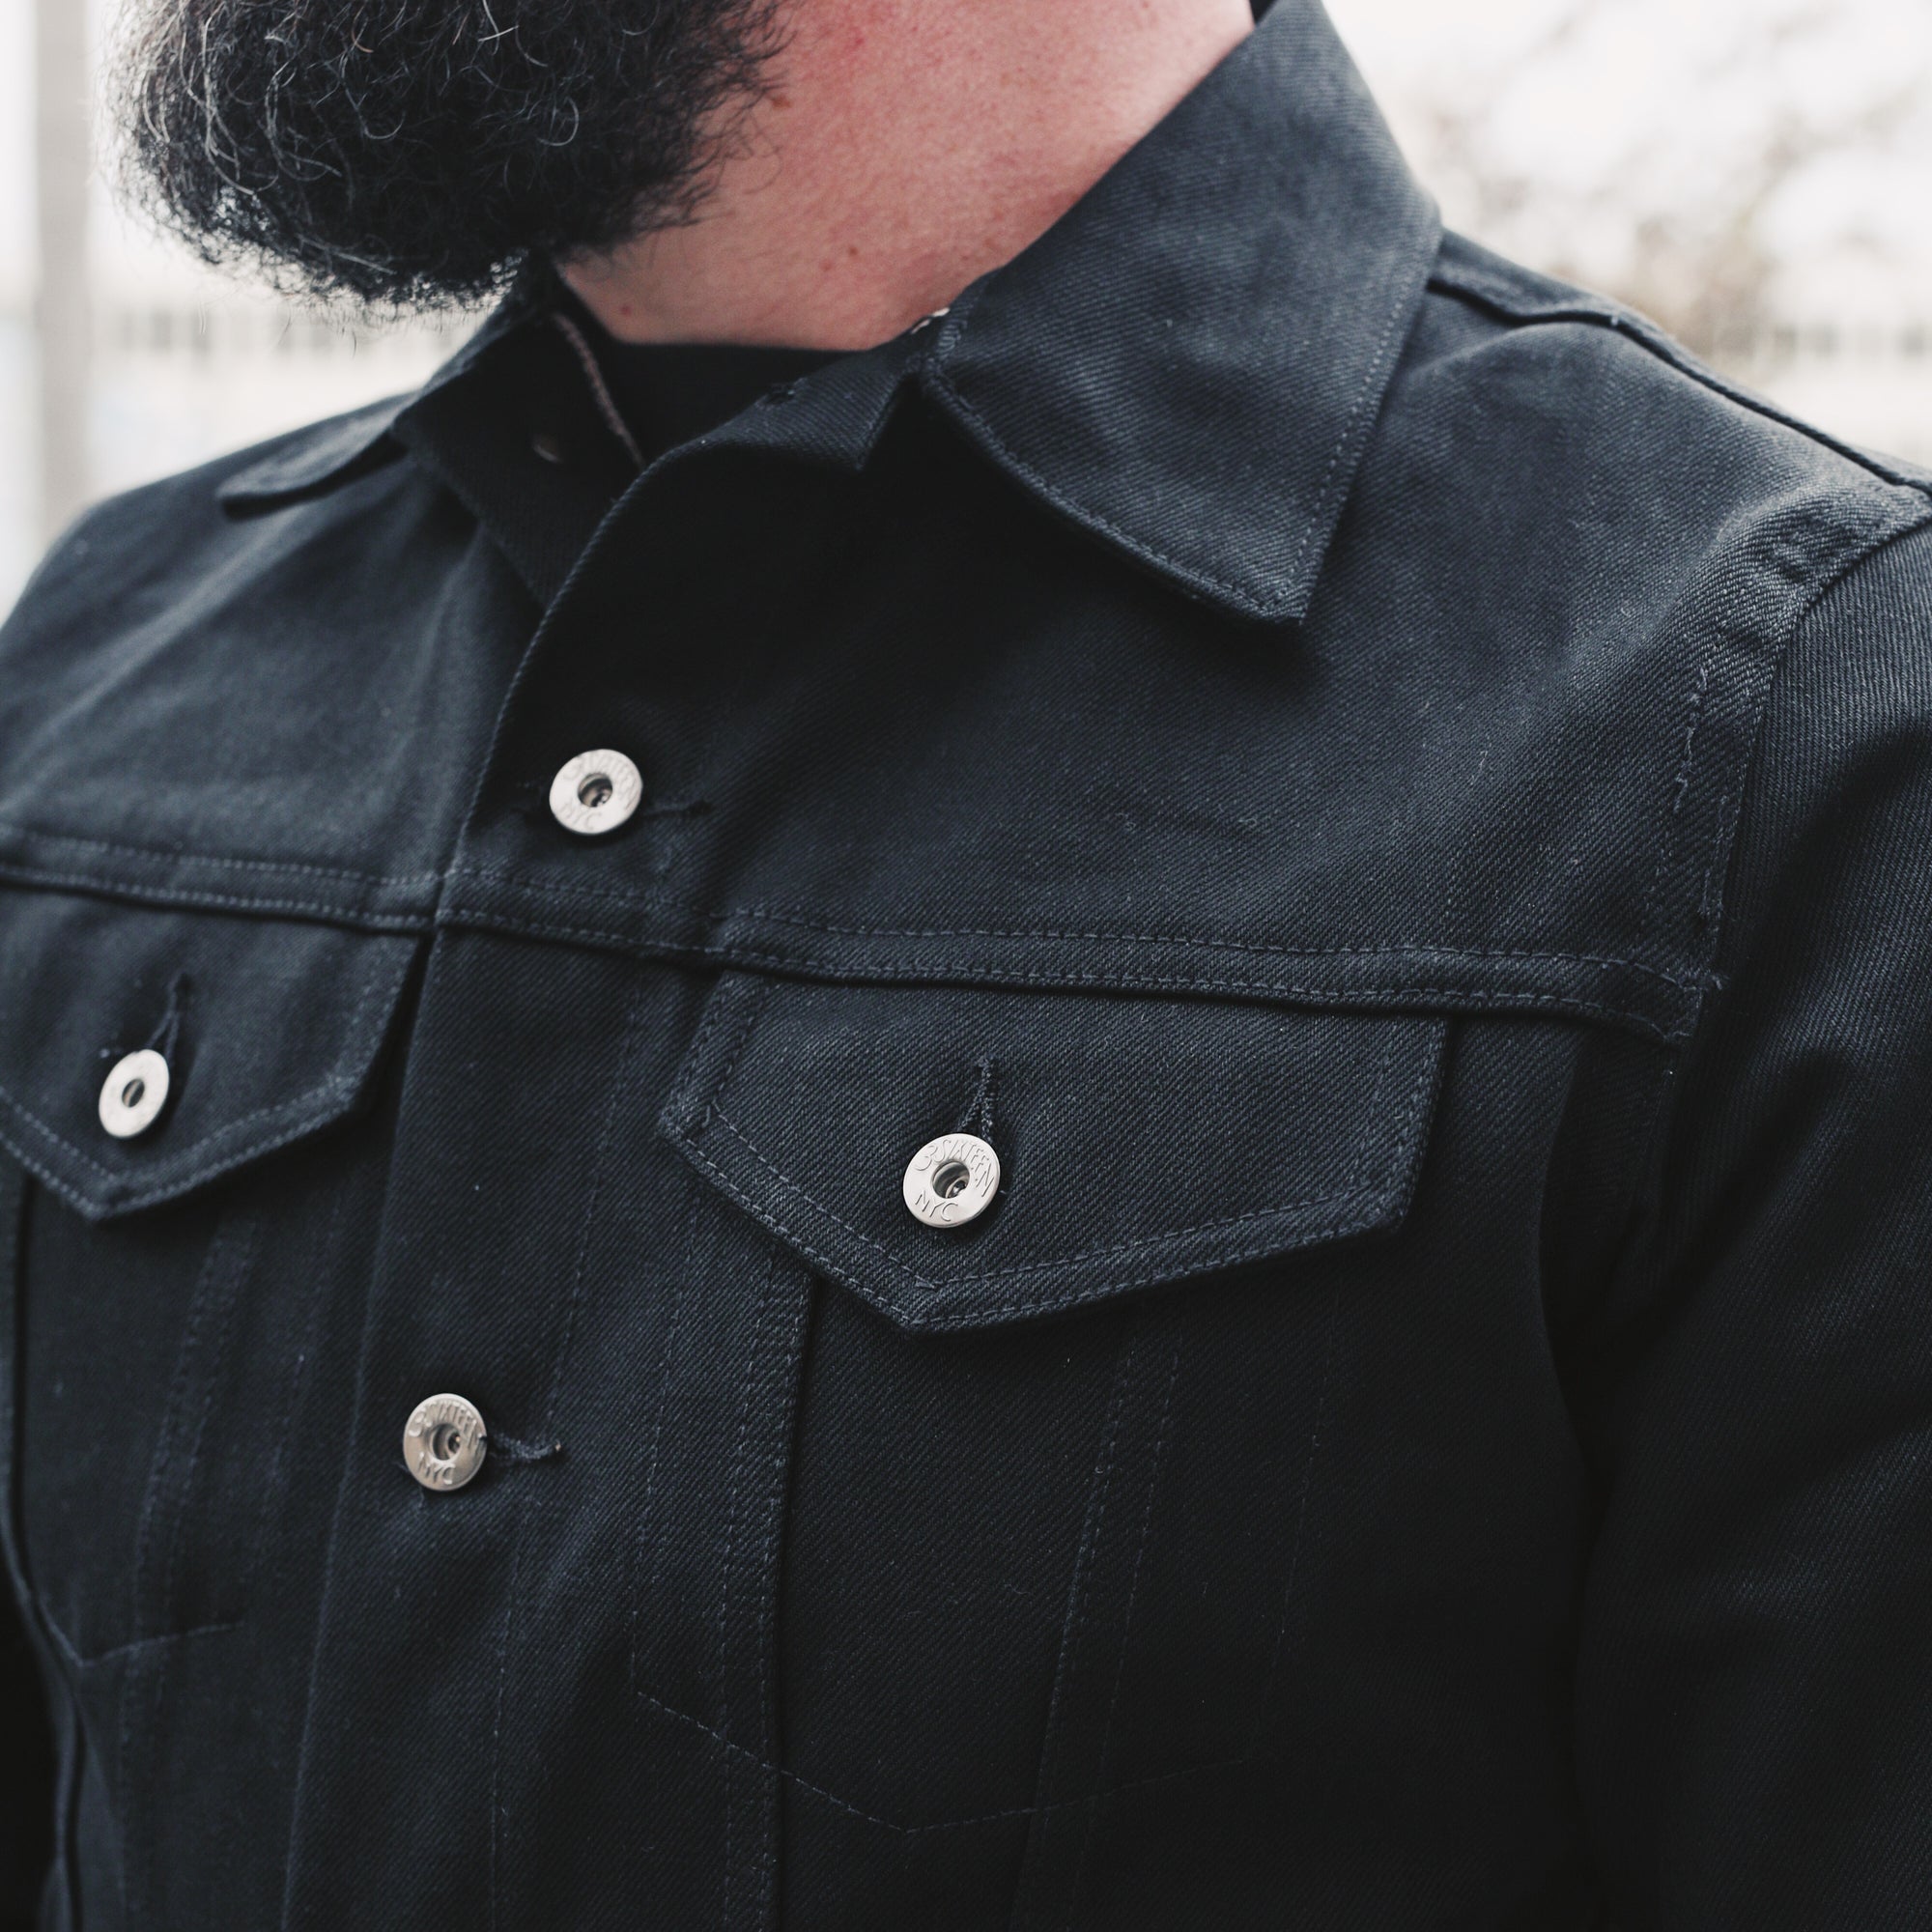 3sixteen double black jacket